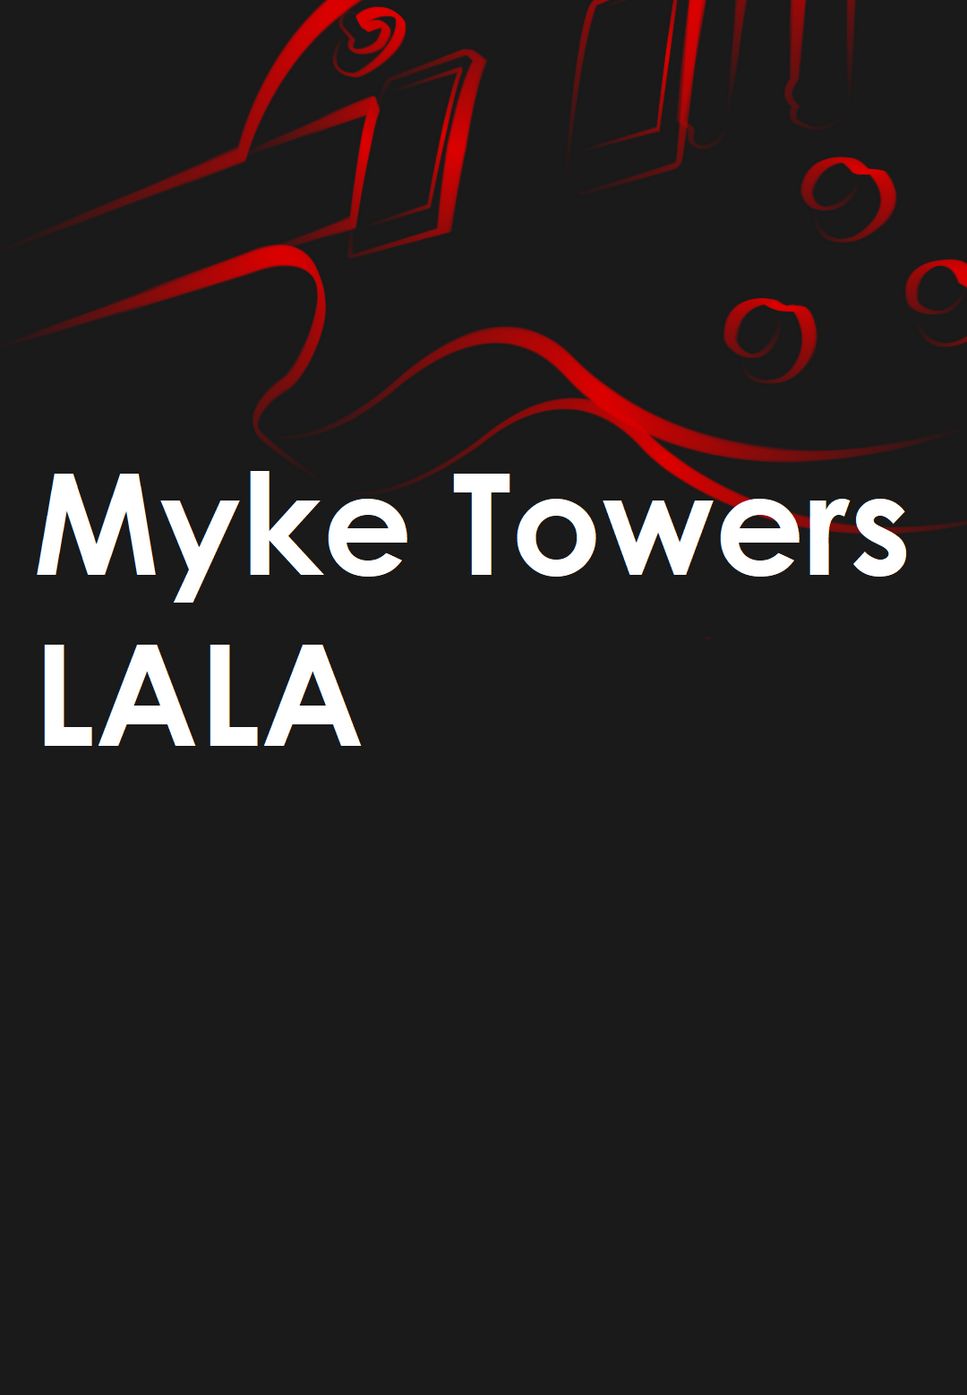 Myke Towers - LALA by Mario Serrato